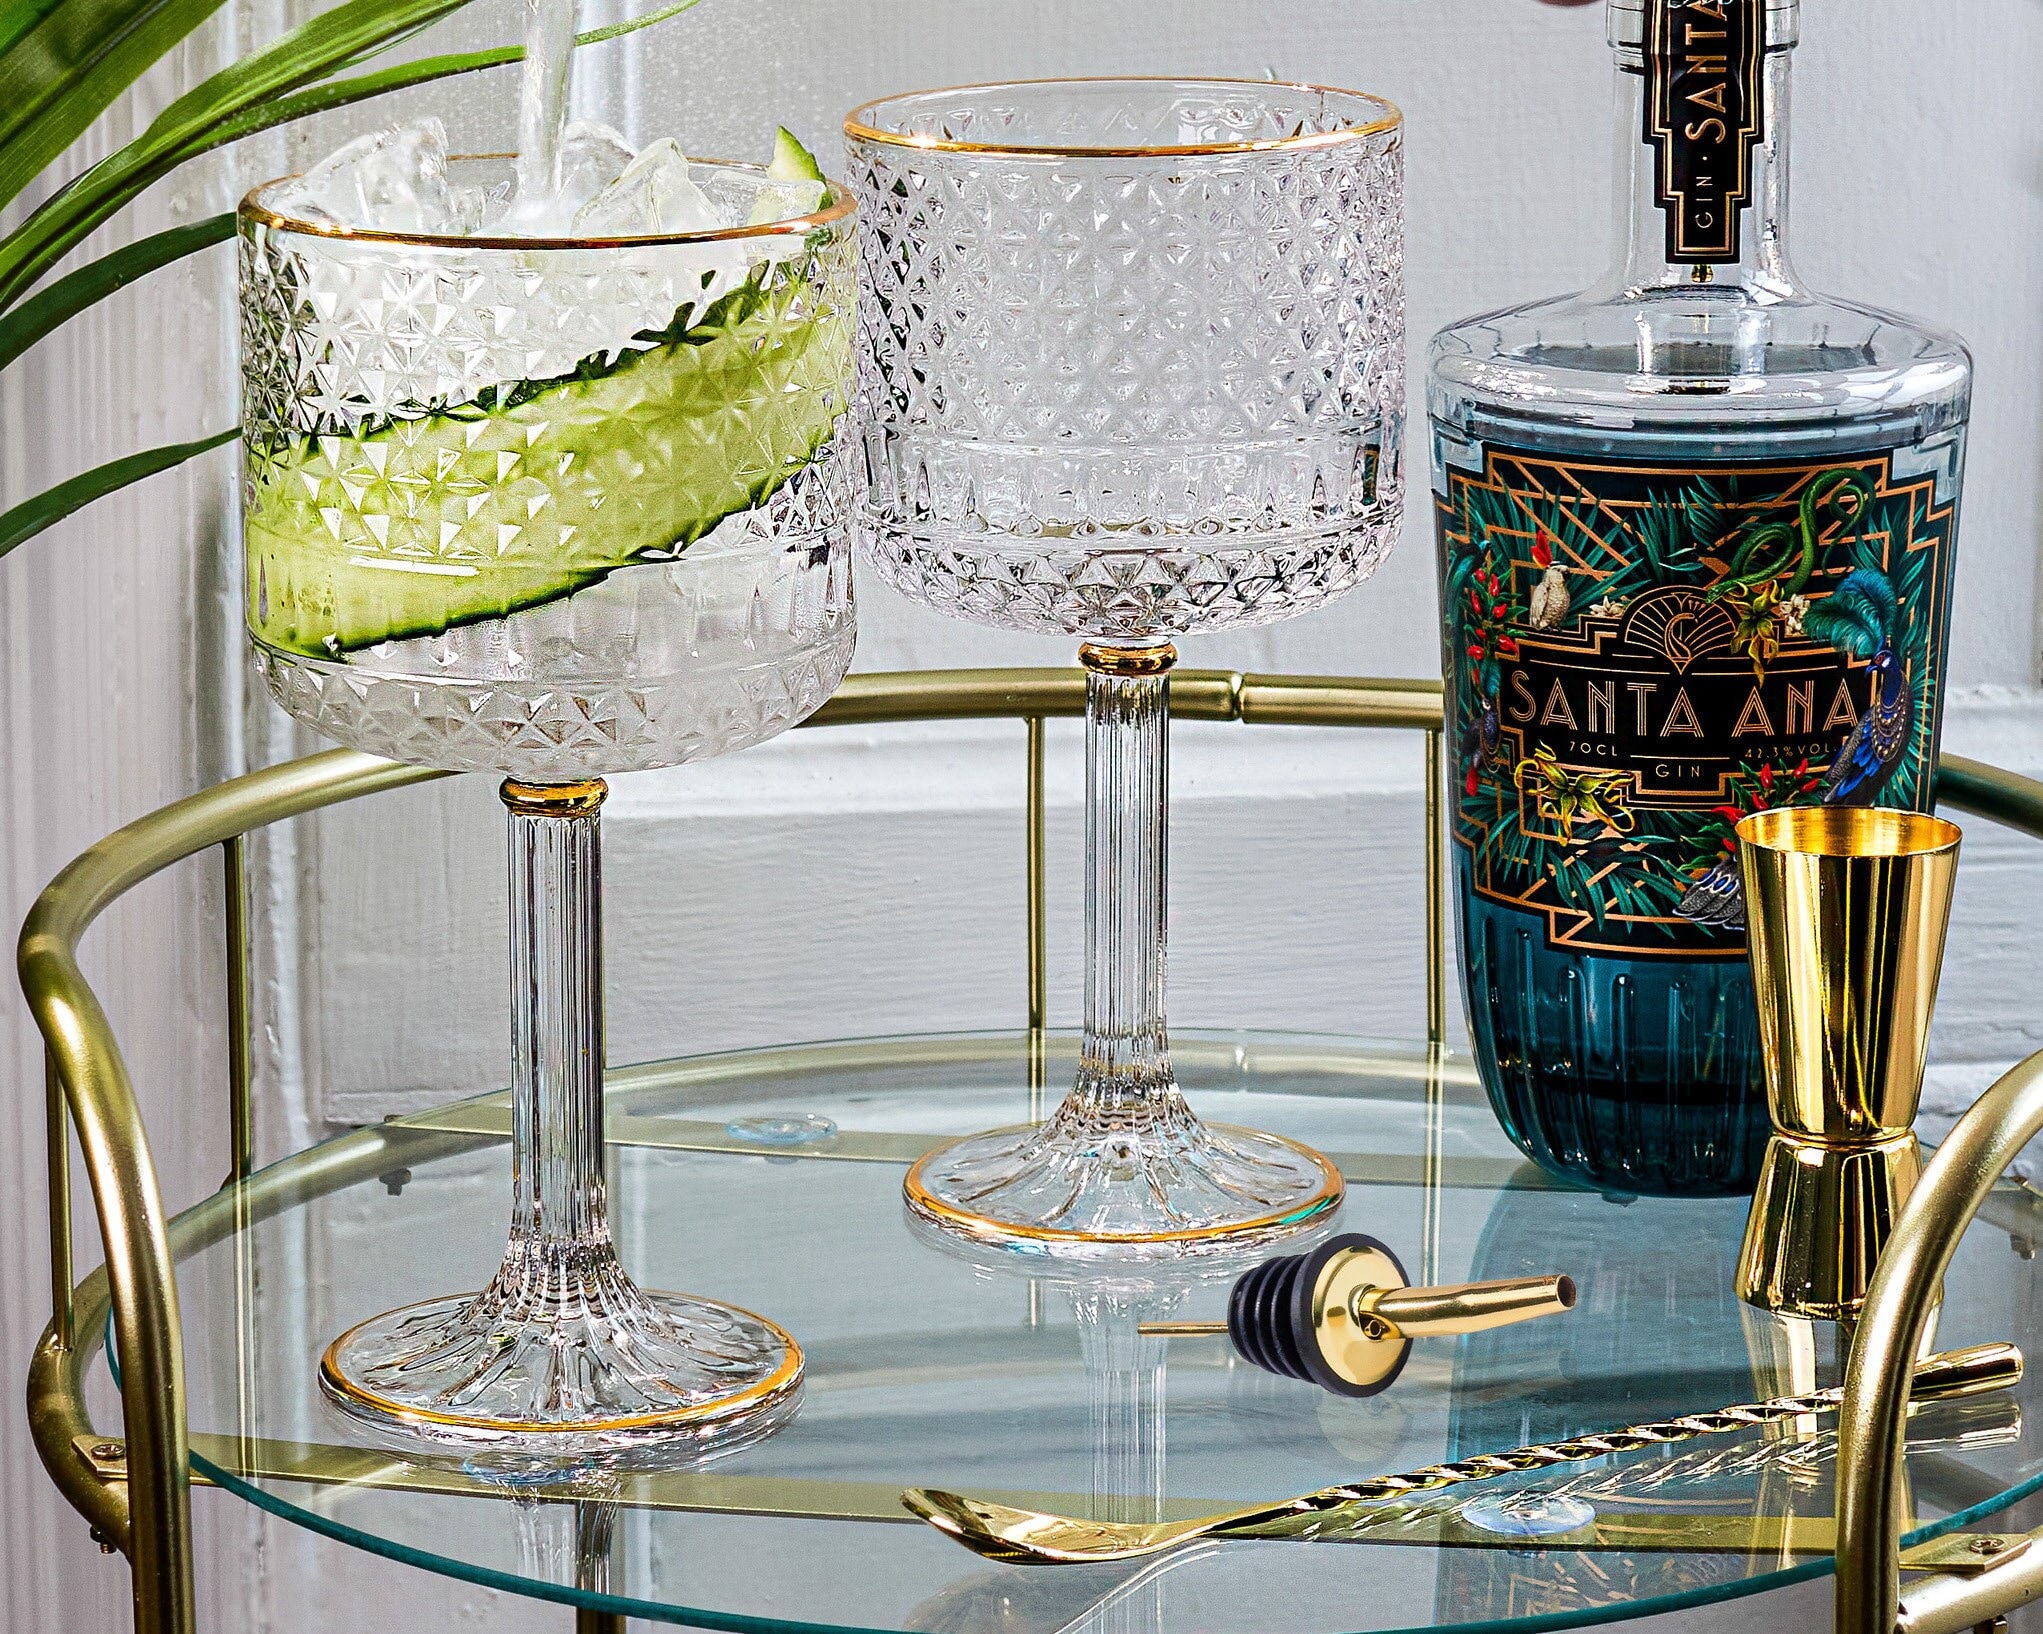 Viski Meridian Highball Glasses Set of 2 - Vintage Drinking Glass, Art Deco  Ripple Glassware Design, 15oz Gold Rimmed Collins Glasses Set